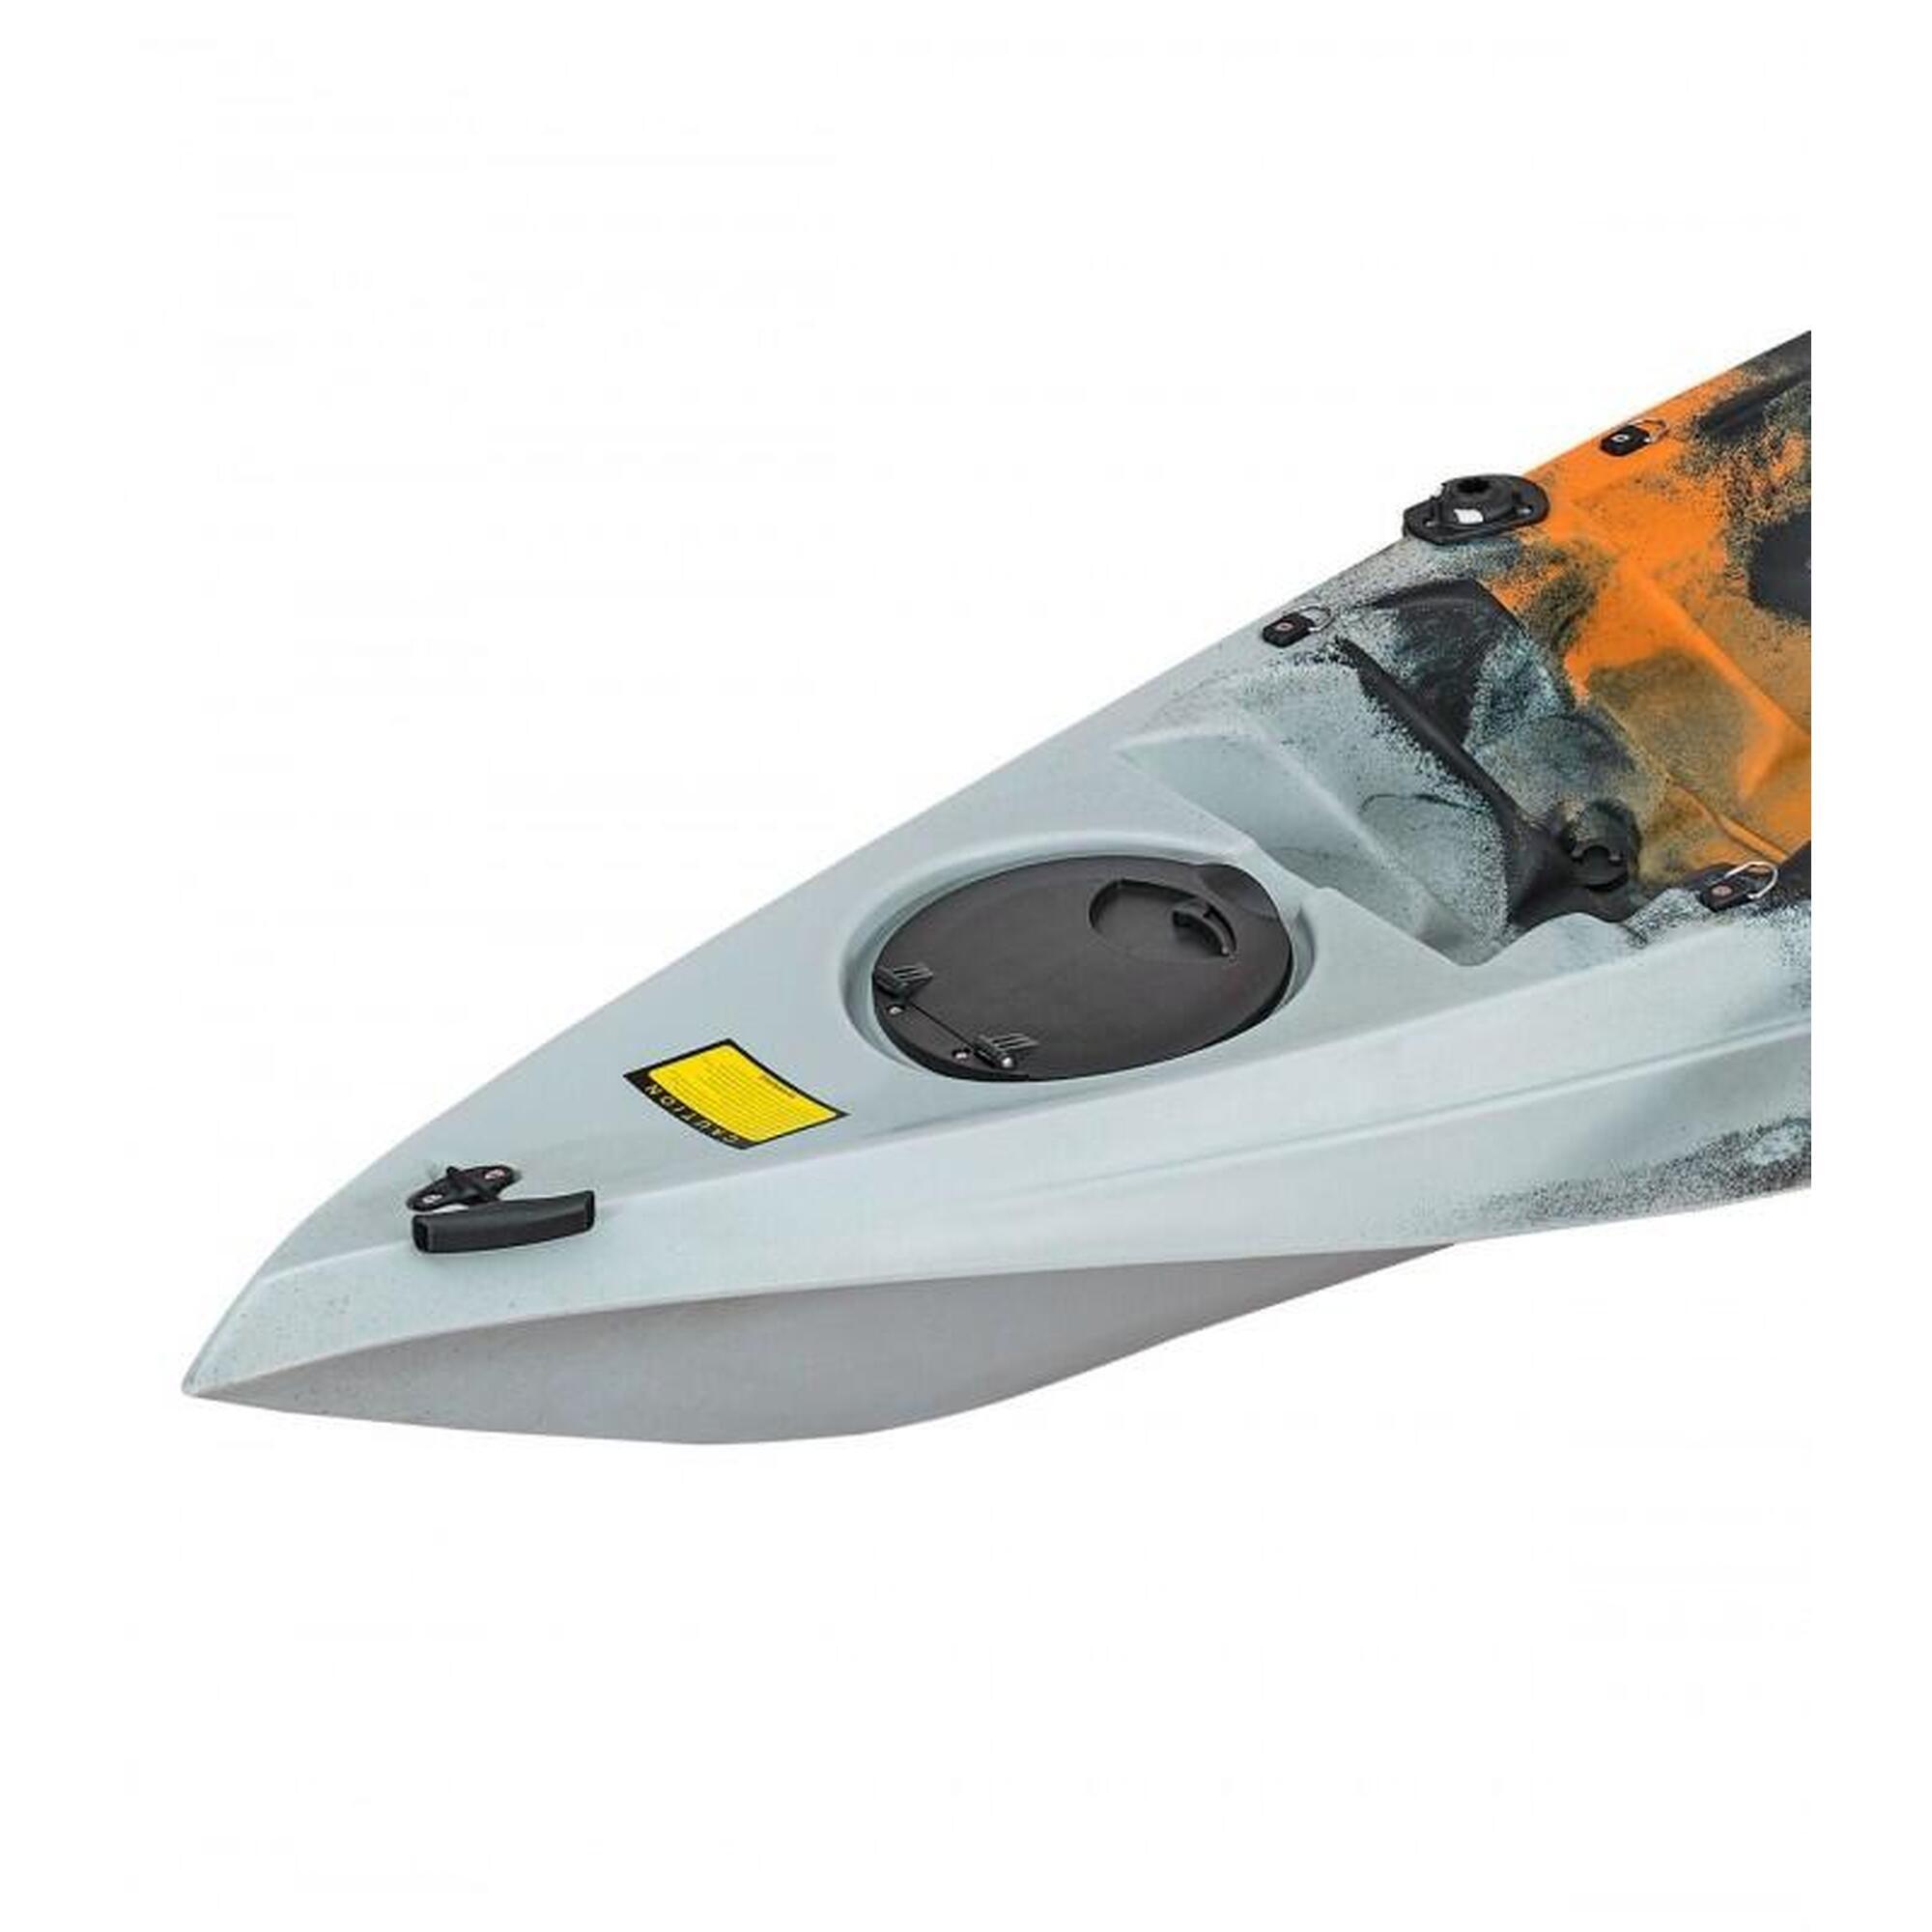 Kayak para pesca currican 315x77cm, Naranja Gris. Con asiento, remo y cañeros.